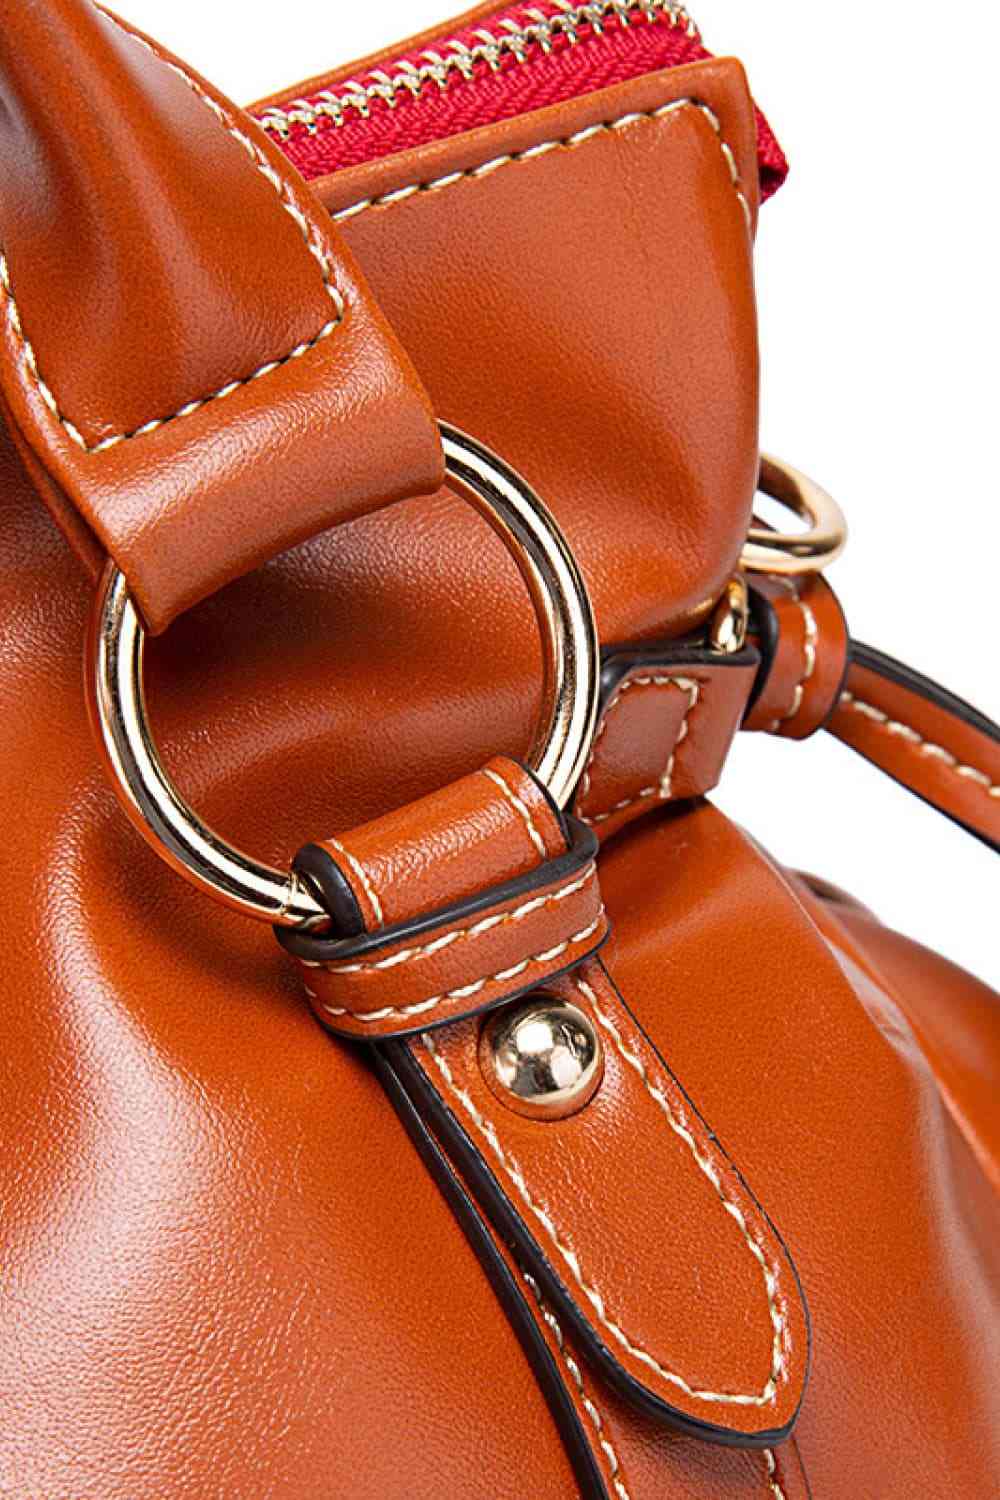 TEEK - PU Leather Handbag with Tassels BAG TEEK Trend   